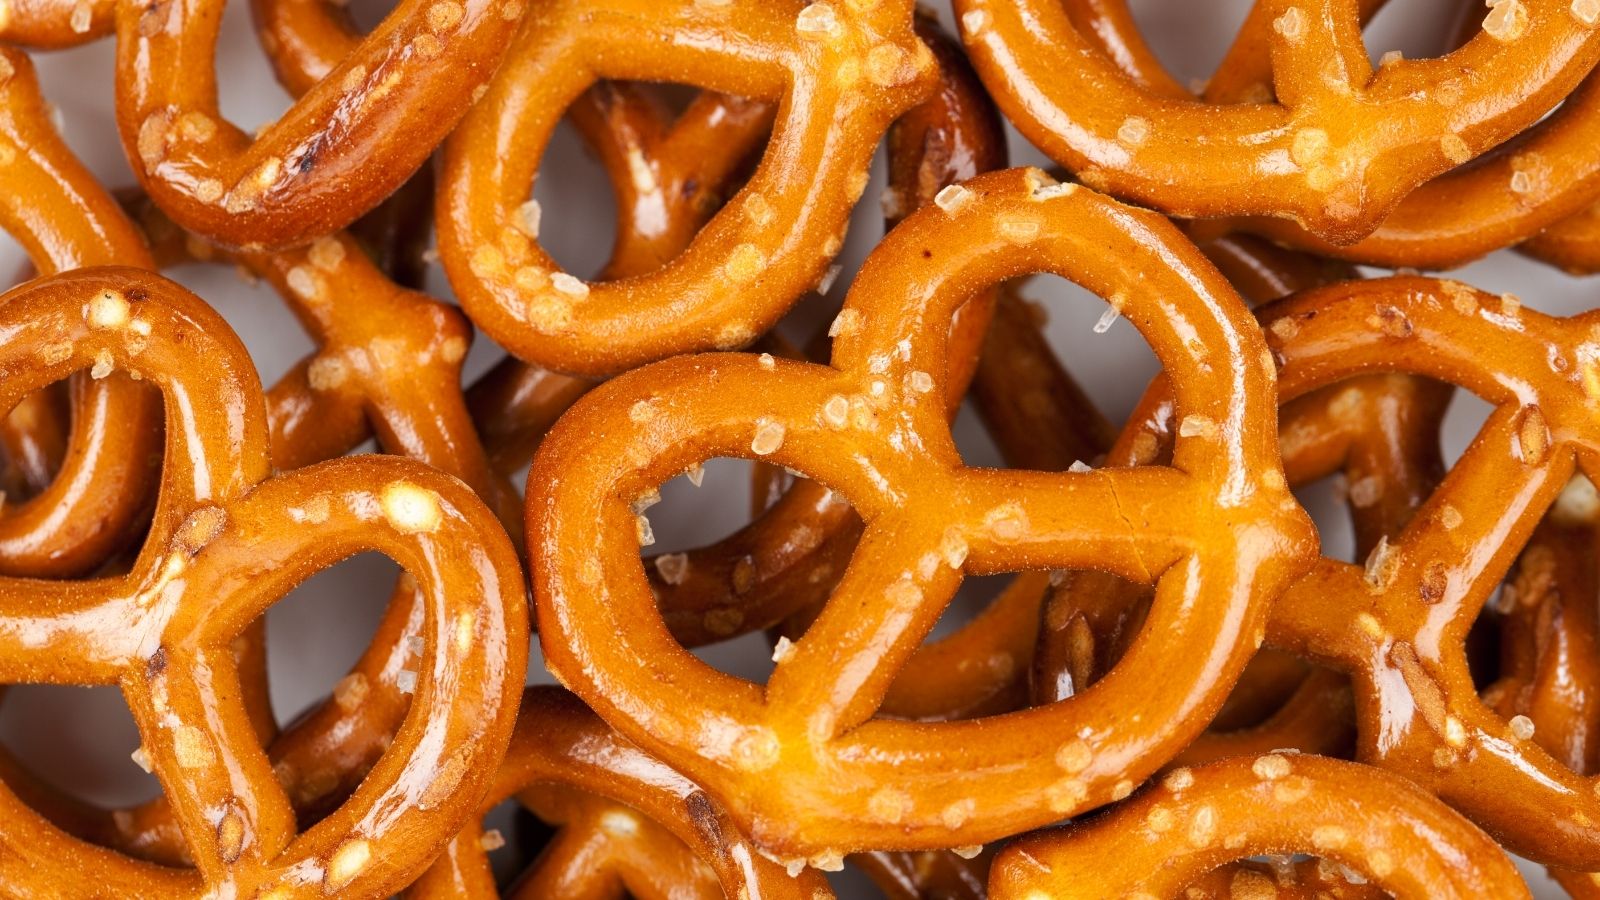 a pile of pretzels